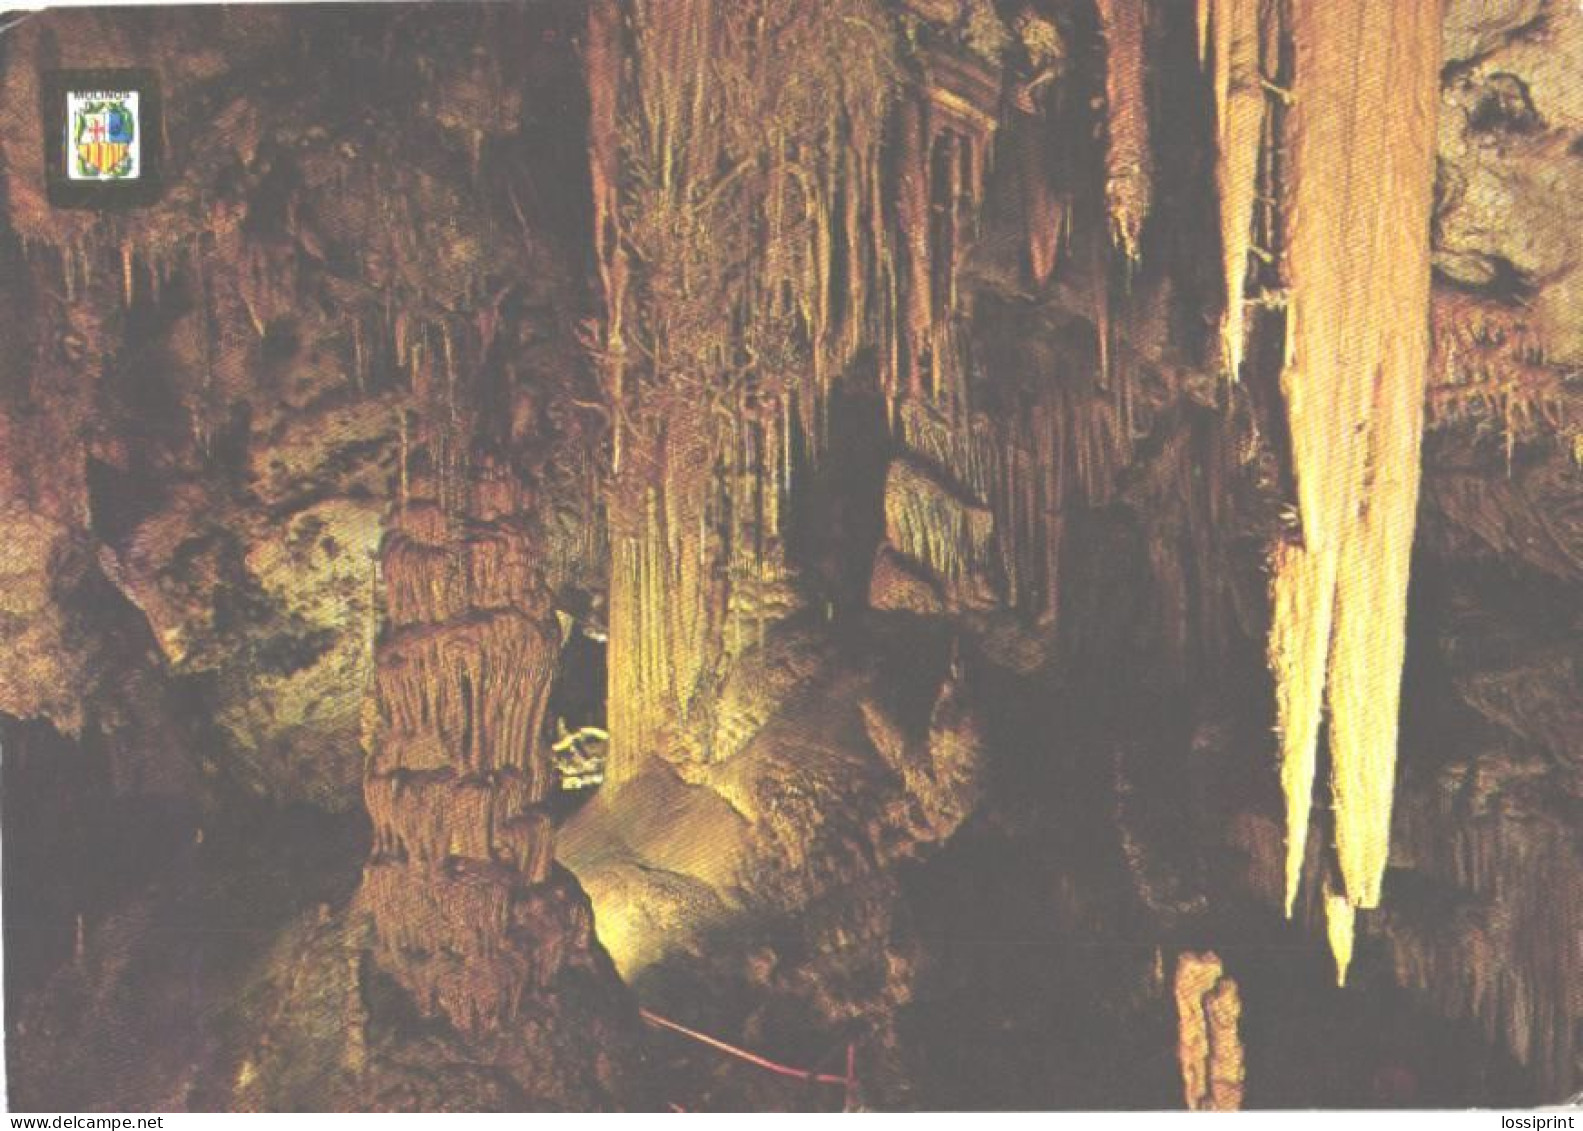 Spain:Molinos Caves, Palacio De Cristal Caves - Teruel